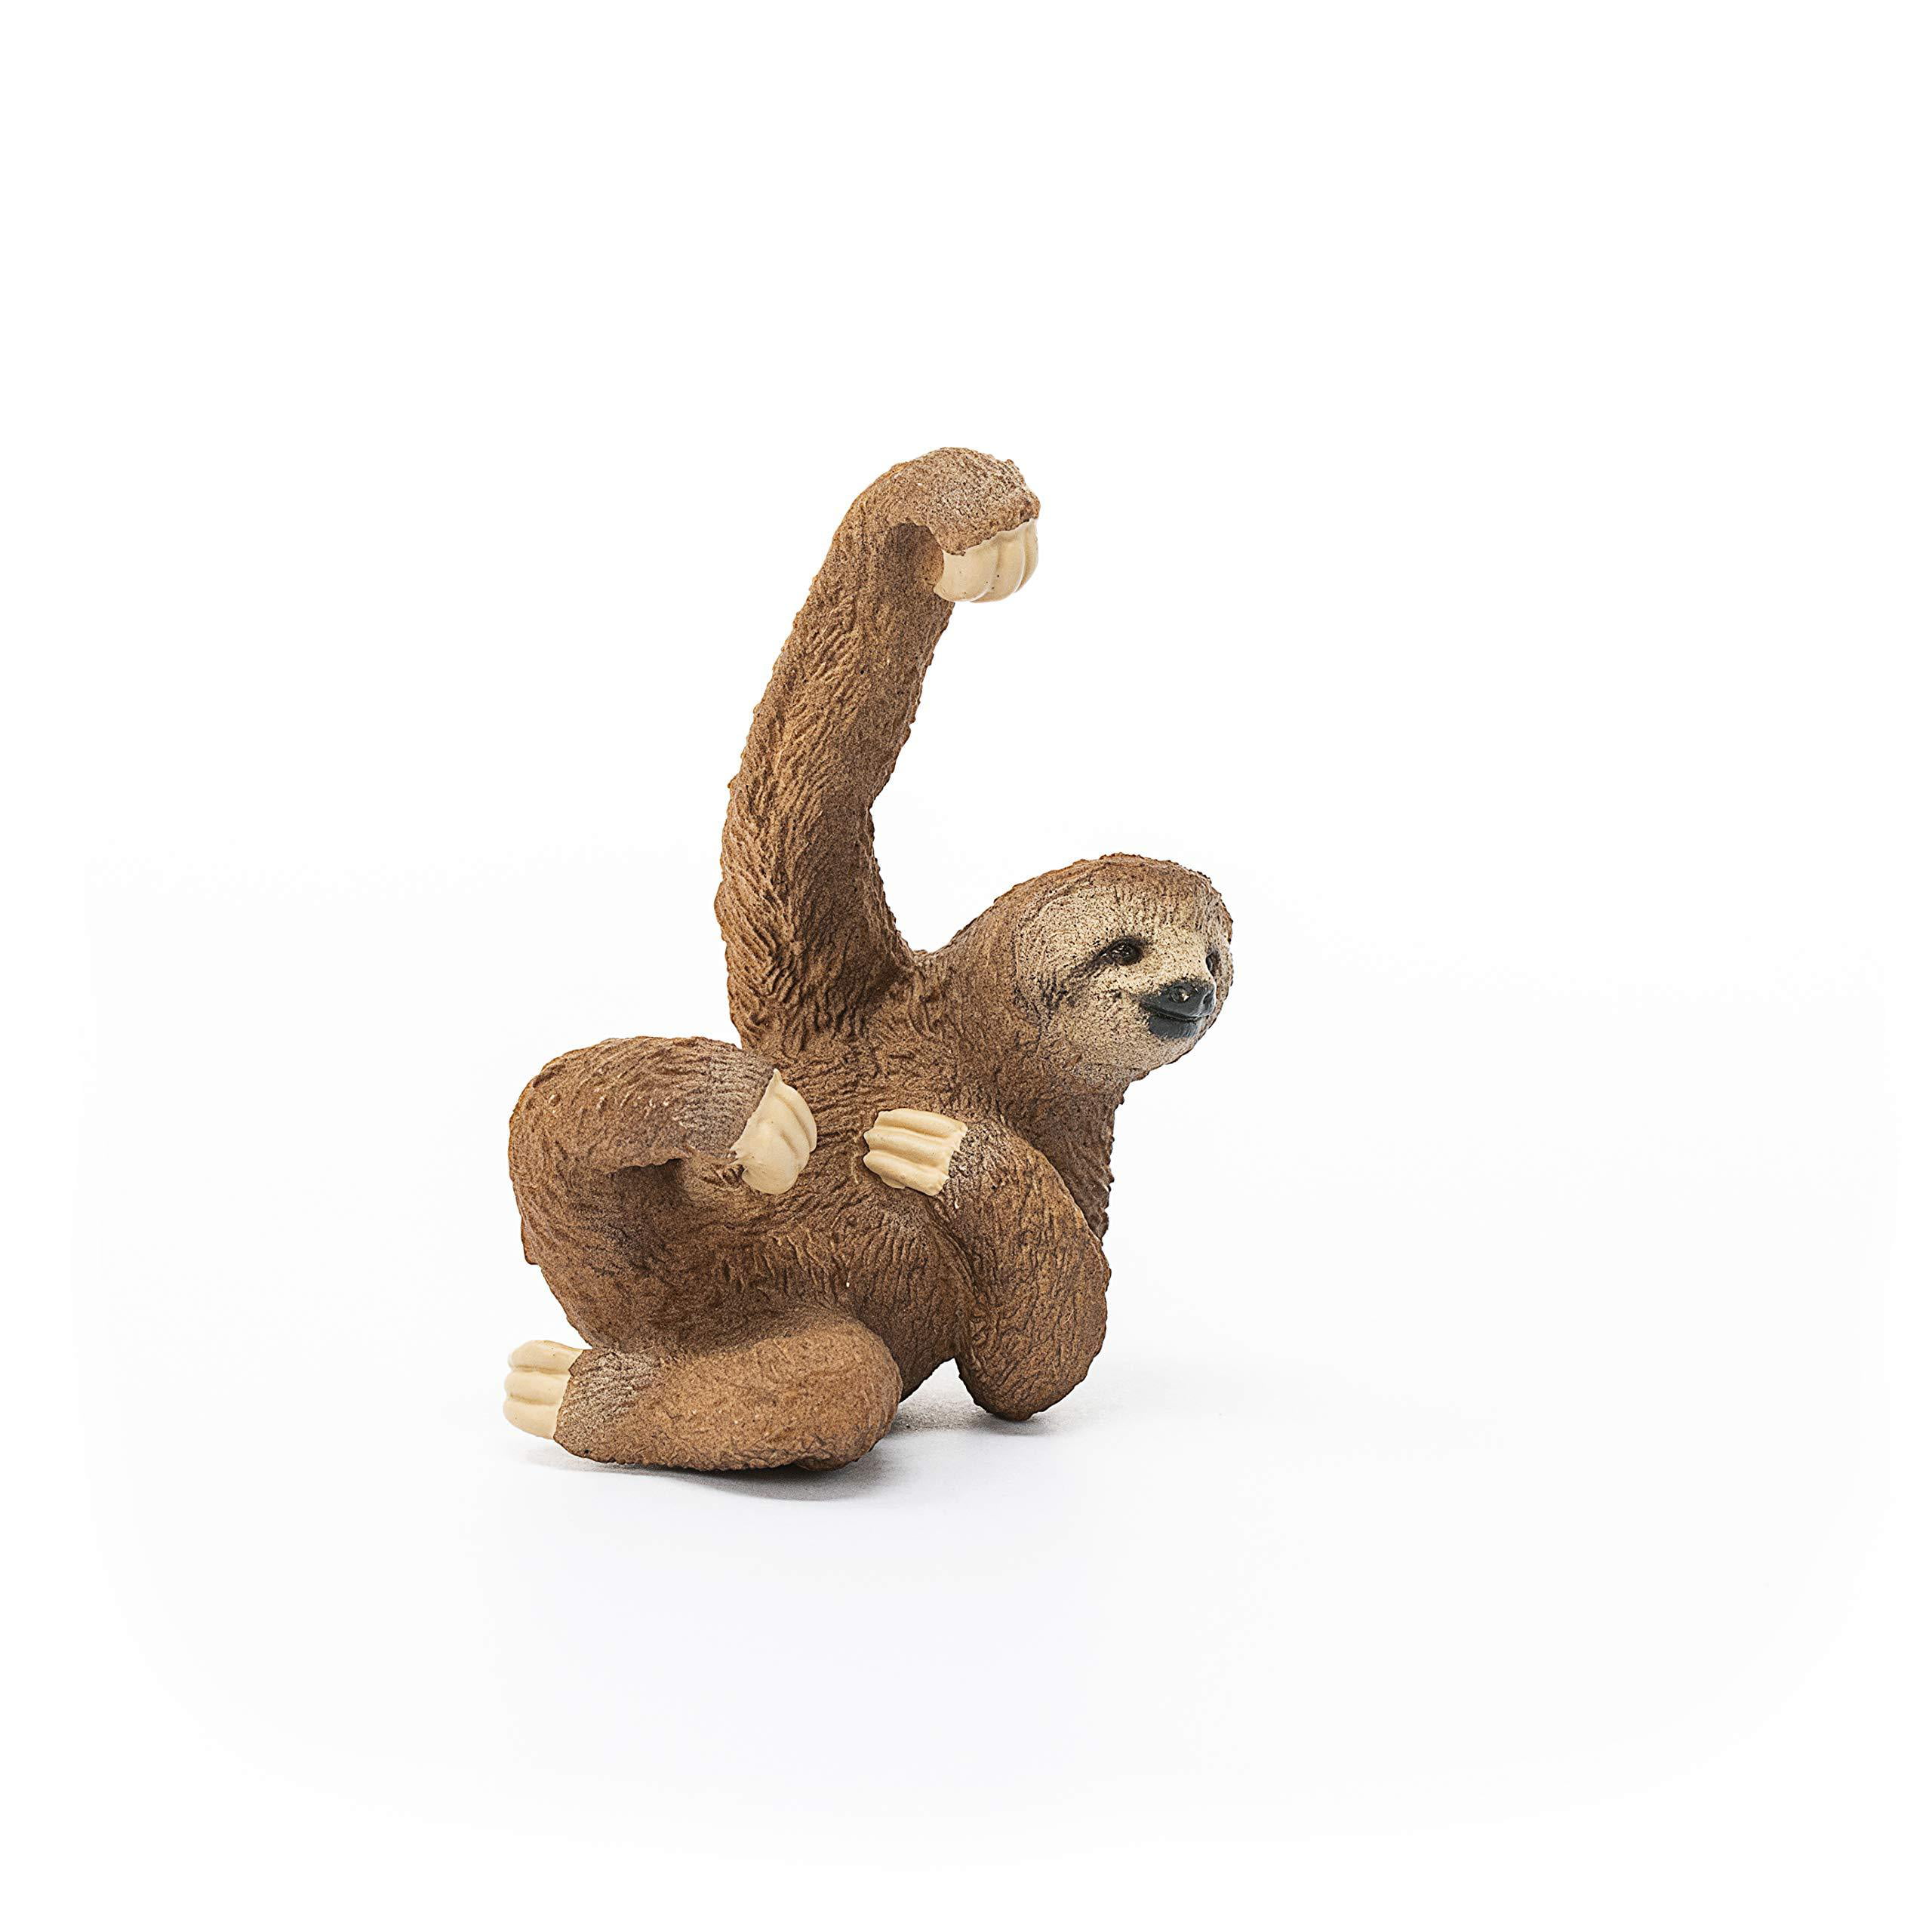 Schleich 14793 Wild Life Sloth Toy 